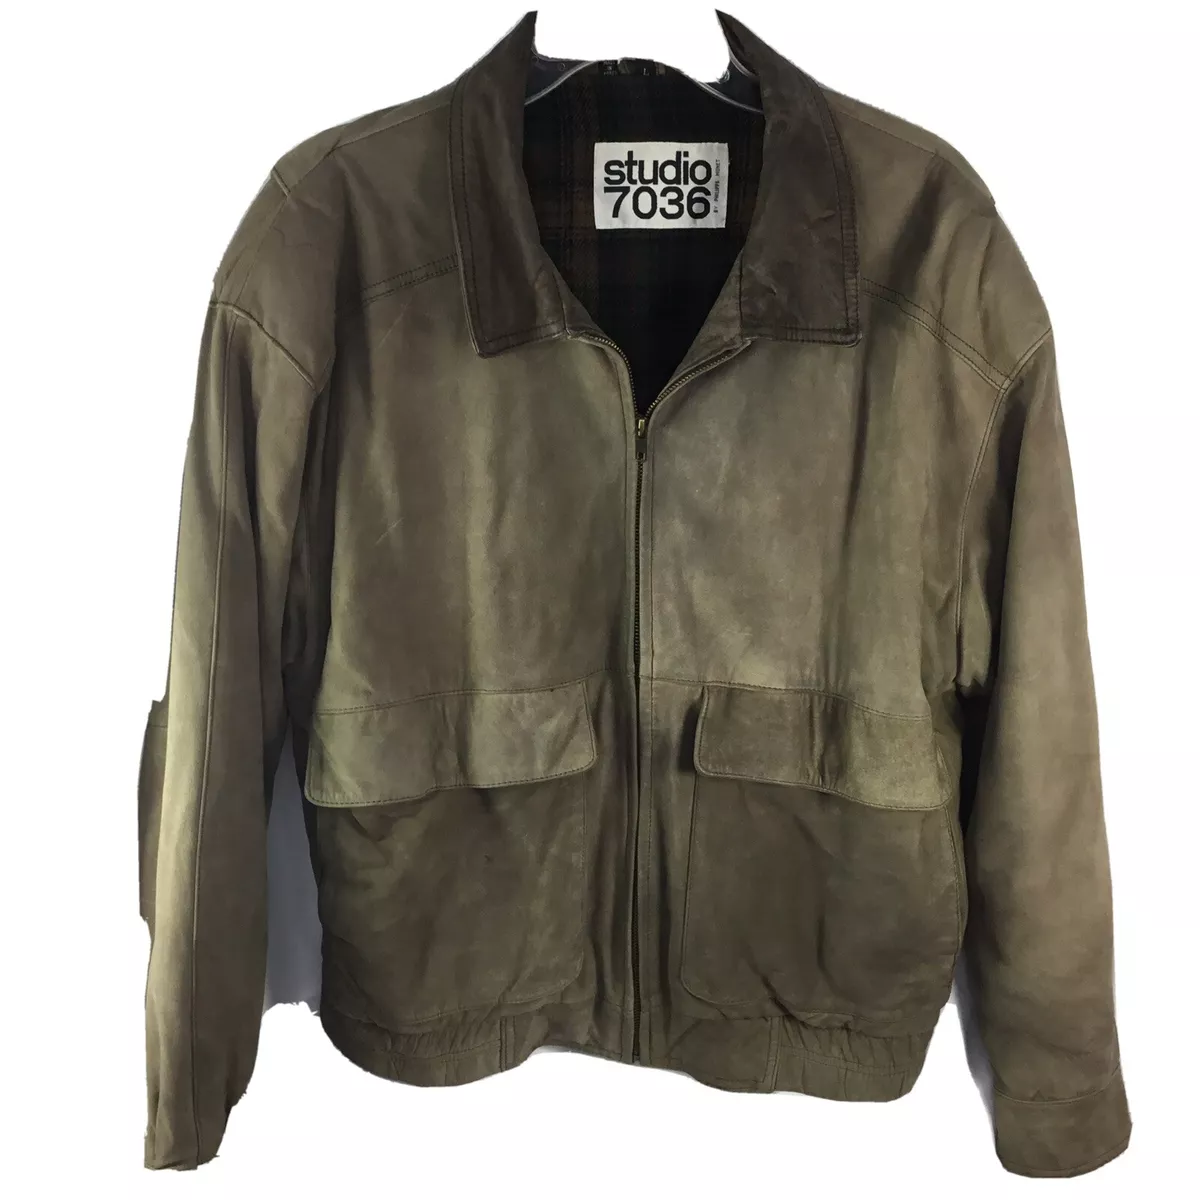 Studio 7036 Leather Bomber Jacket Size Large 1990s Green Phillip Monet eBay